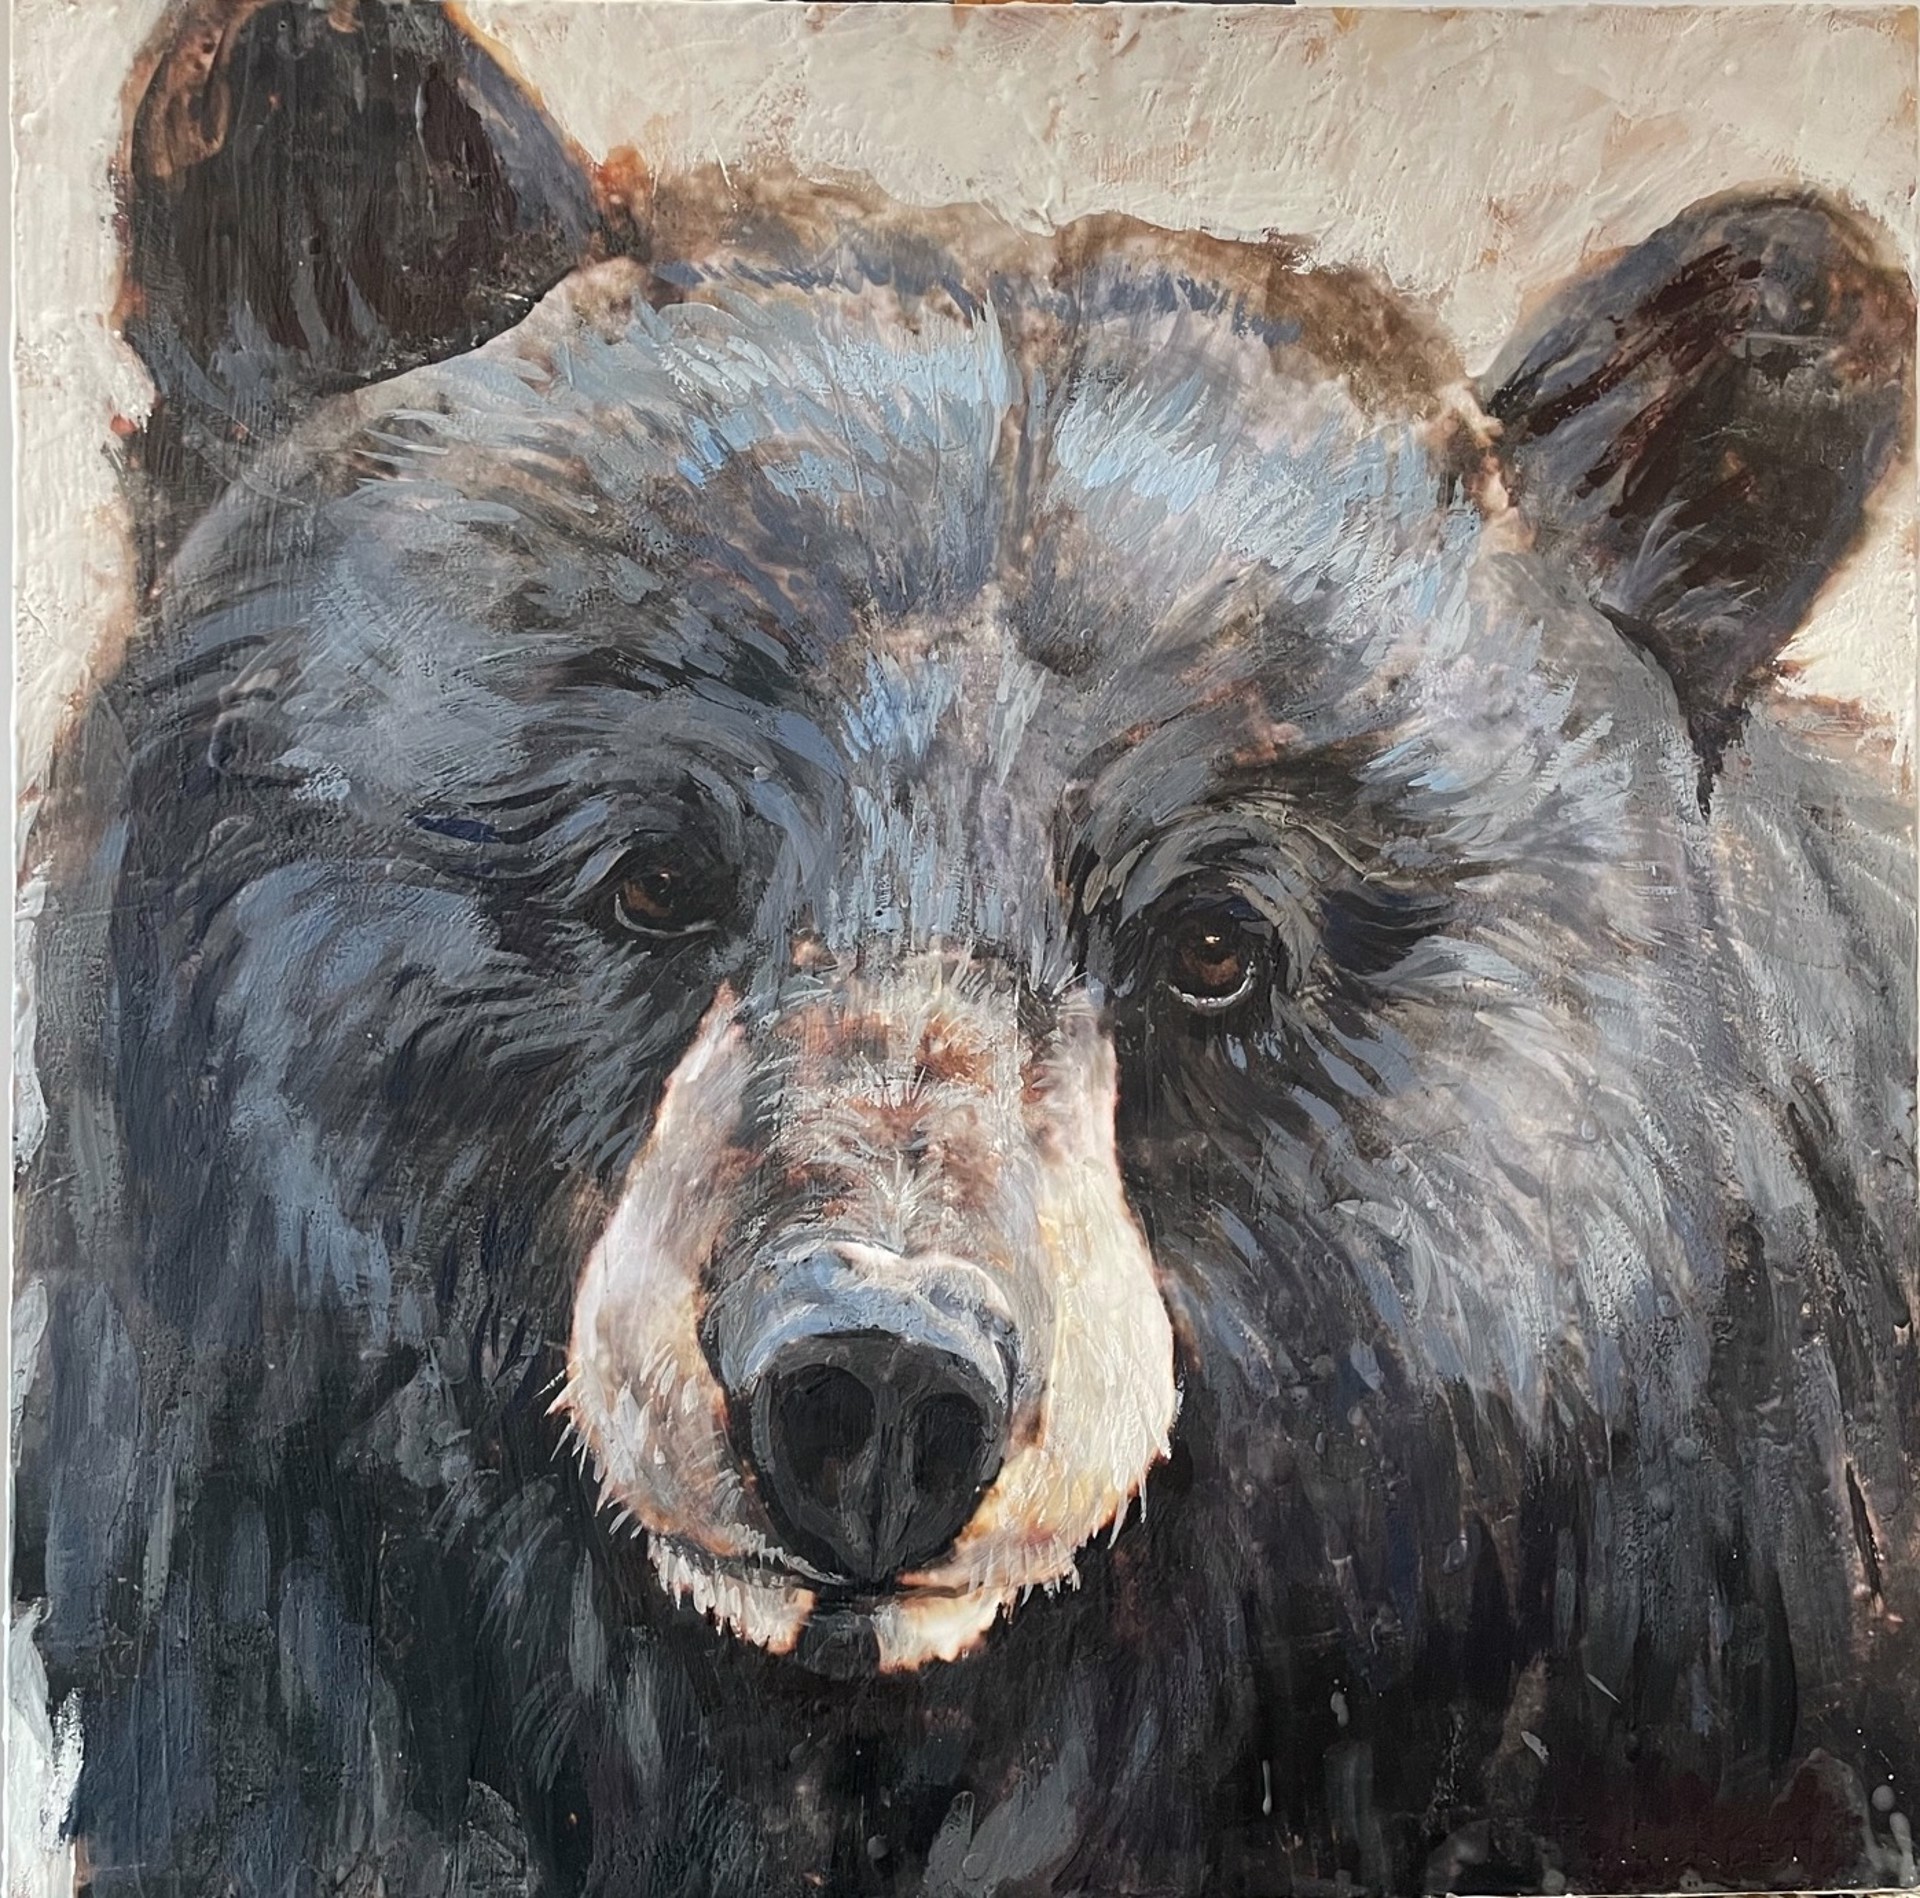 Gazing Bear by Paul Garbett